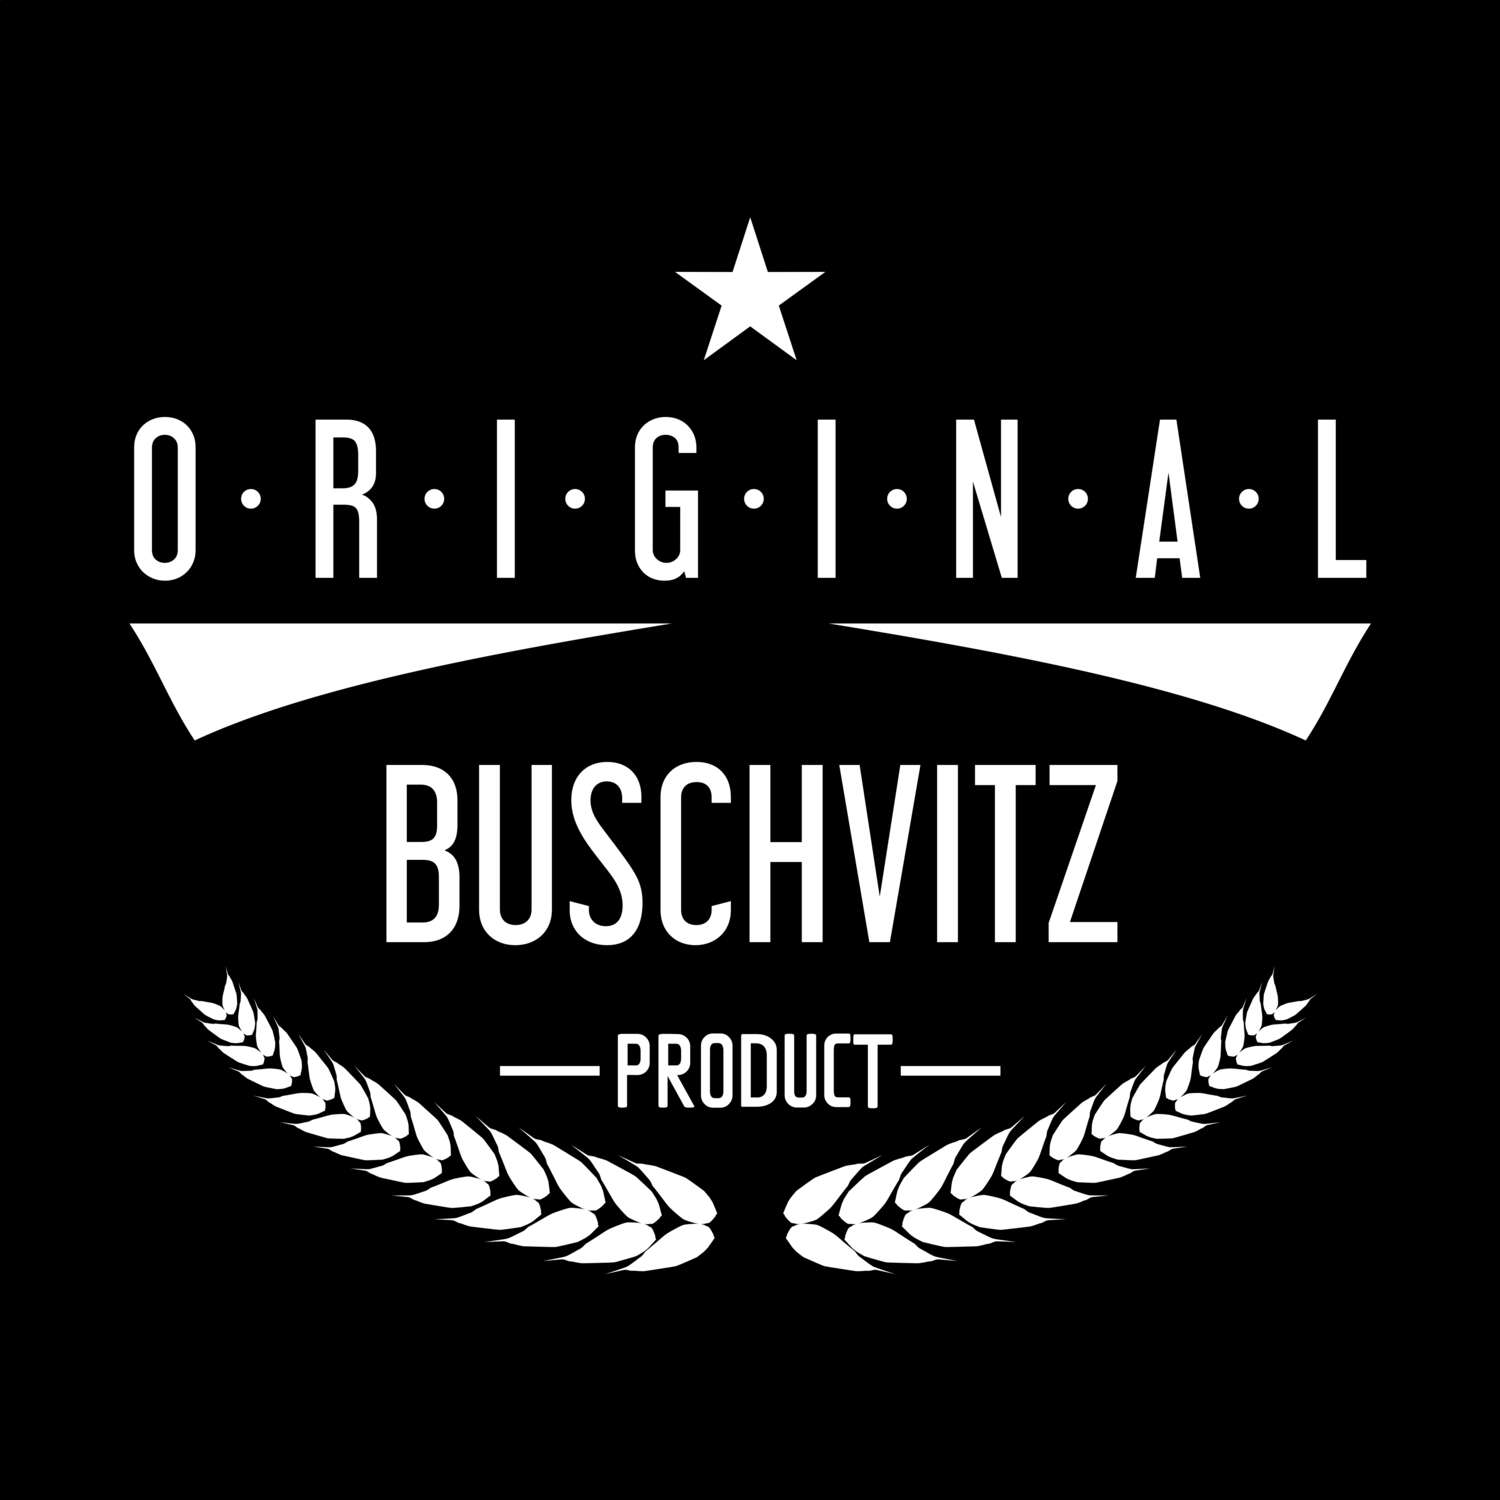 Buschvitz T-Shirt »Original Product«